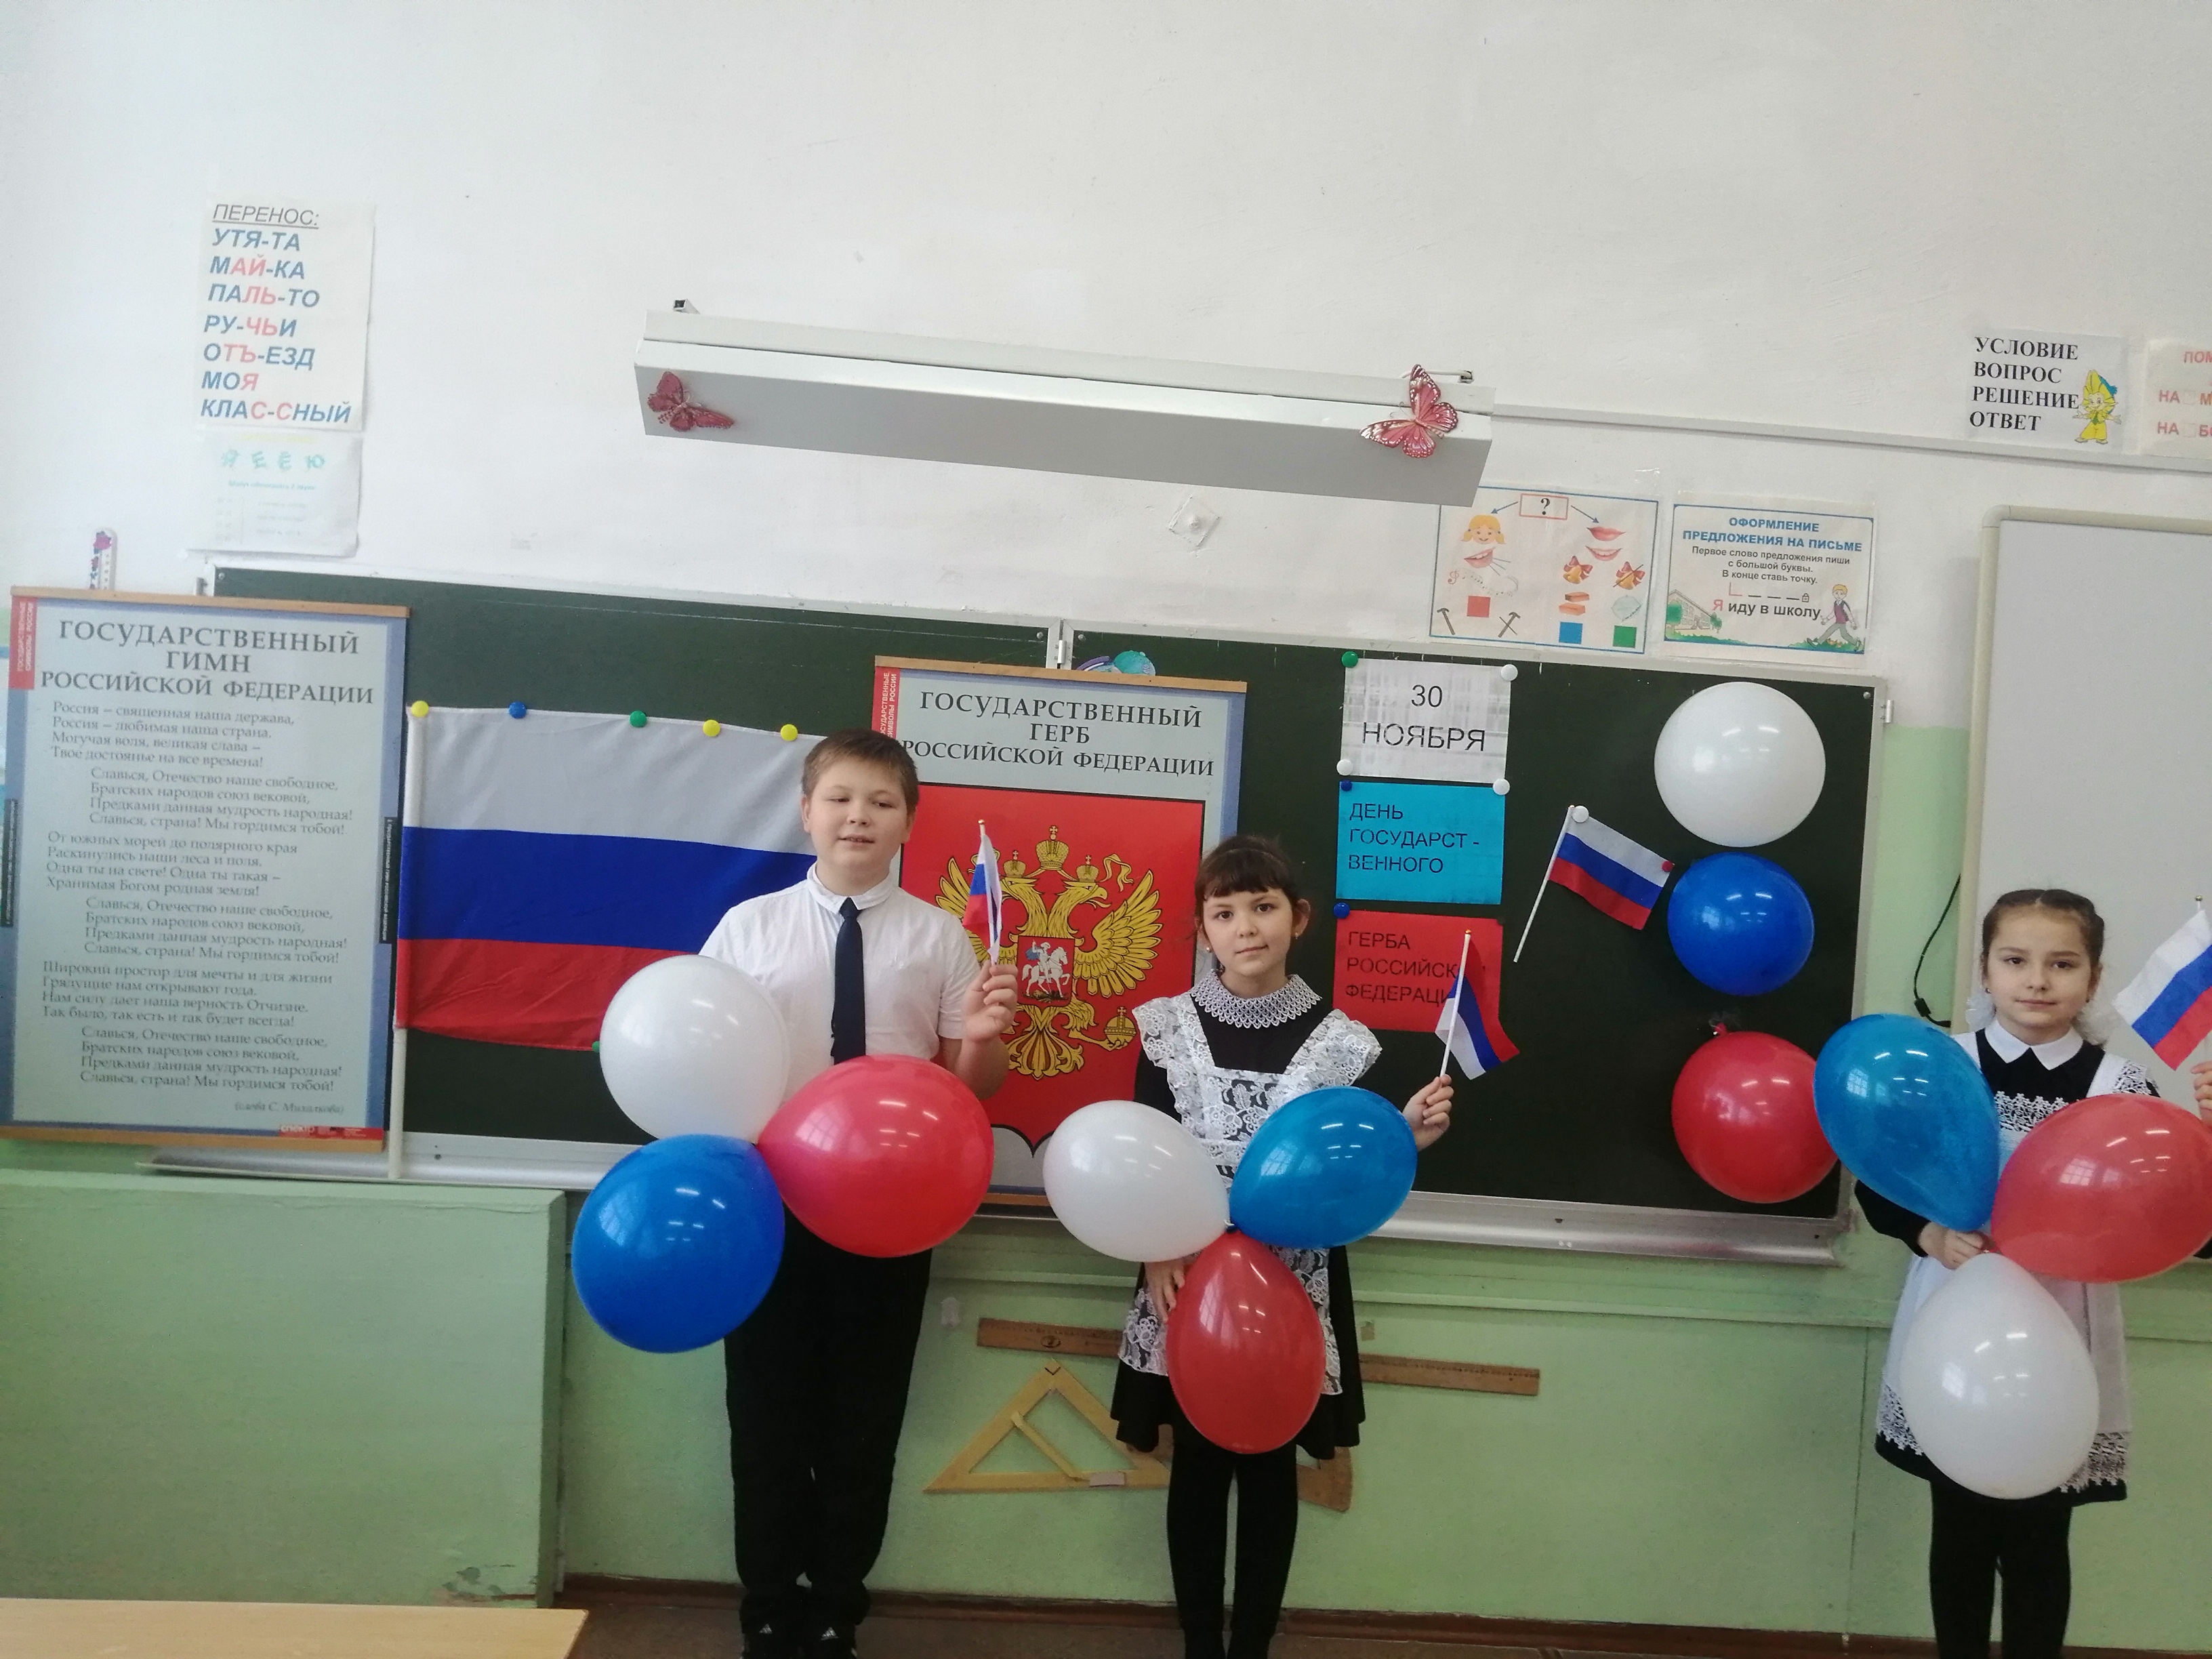 Школьная жизнь - День государственного герба России